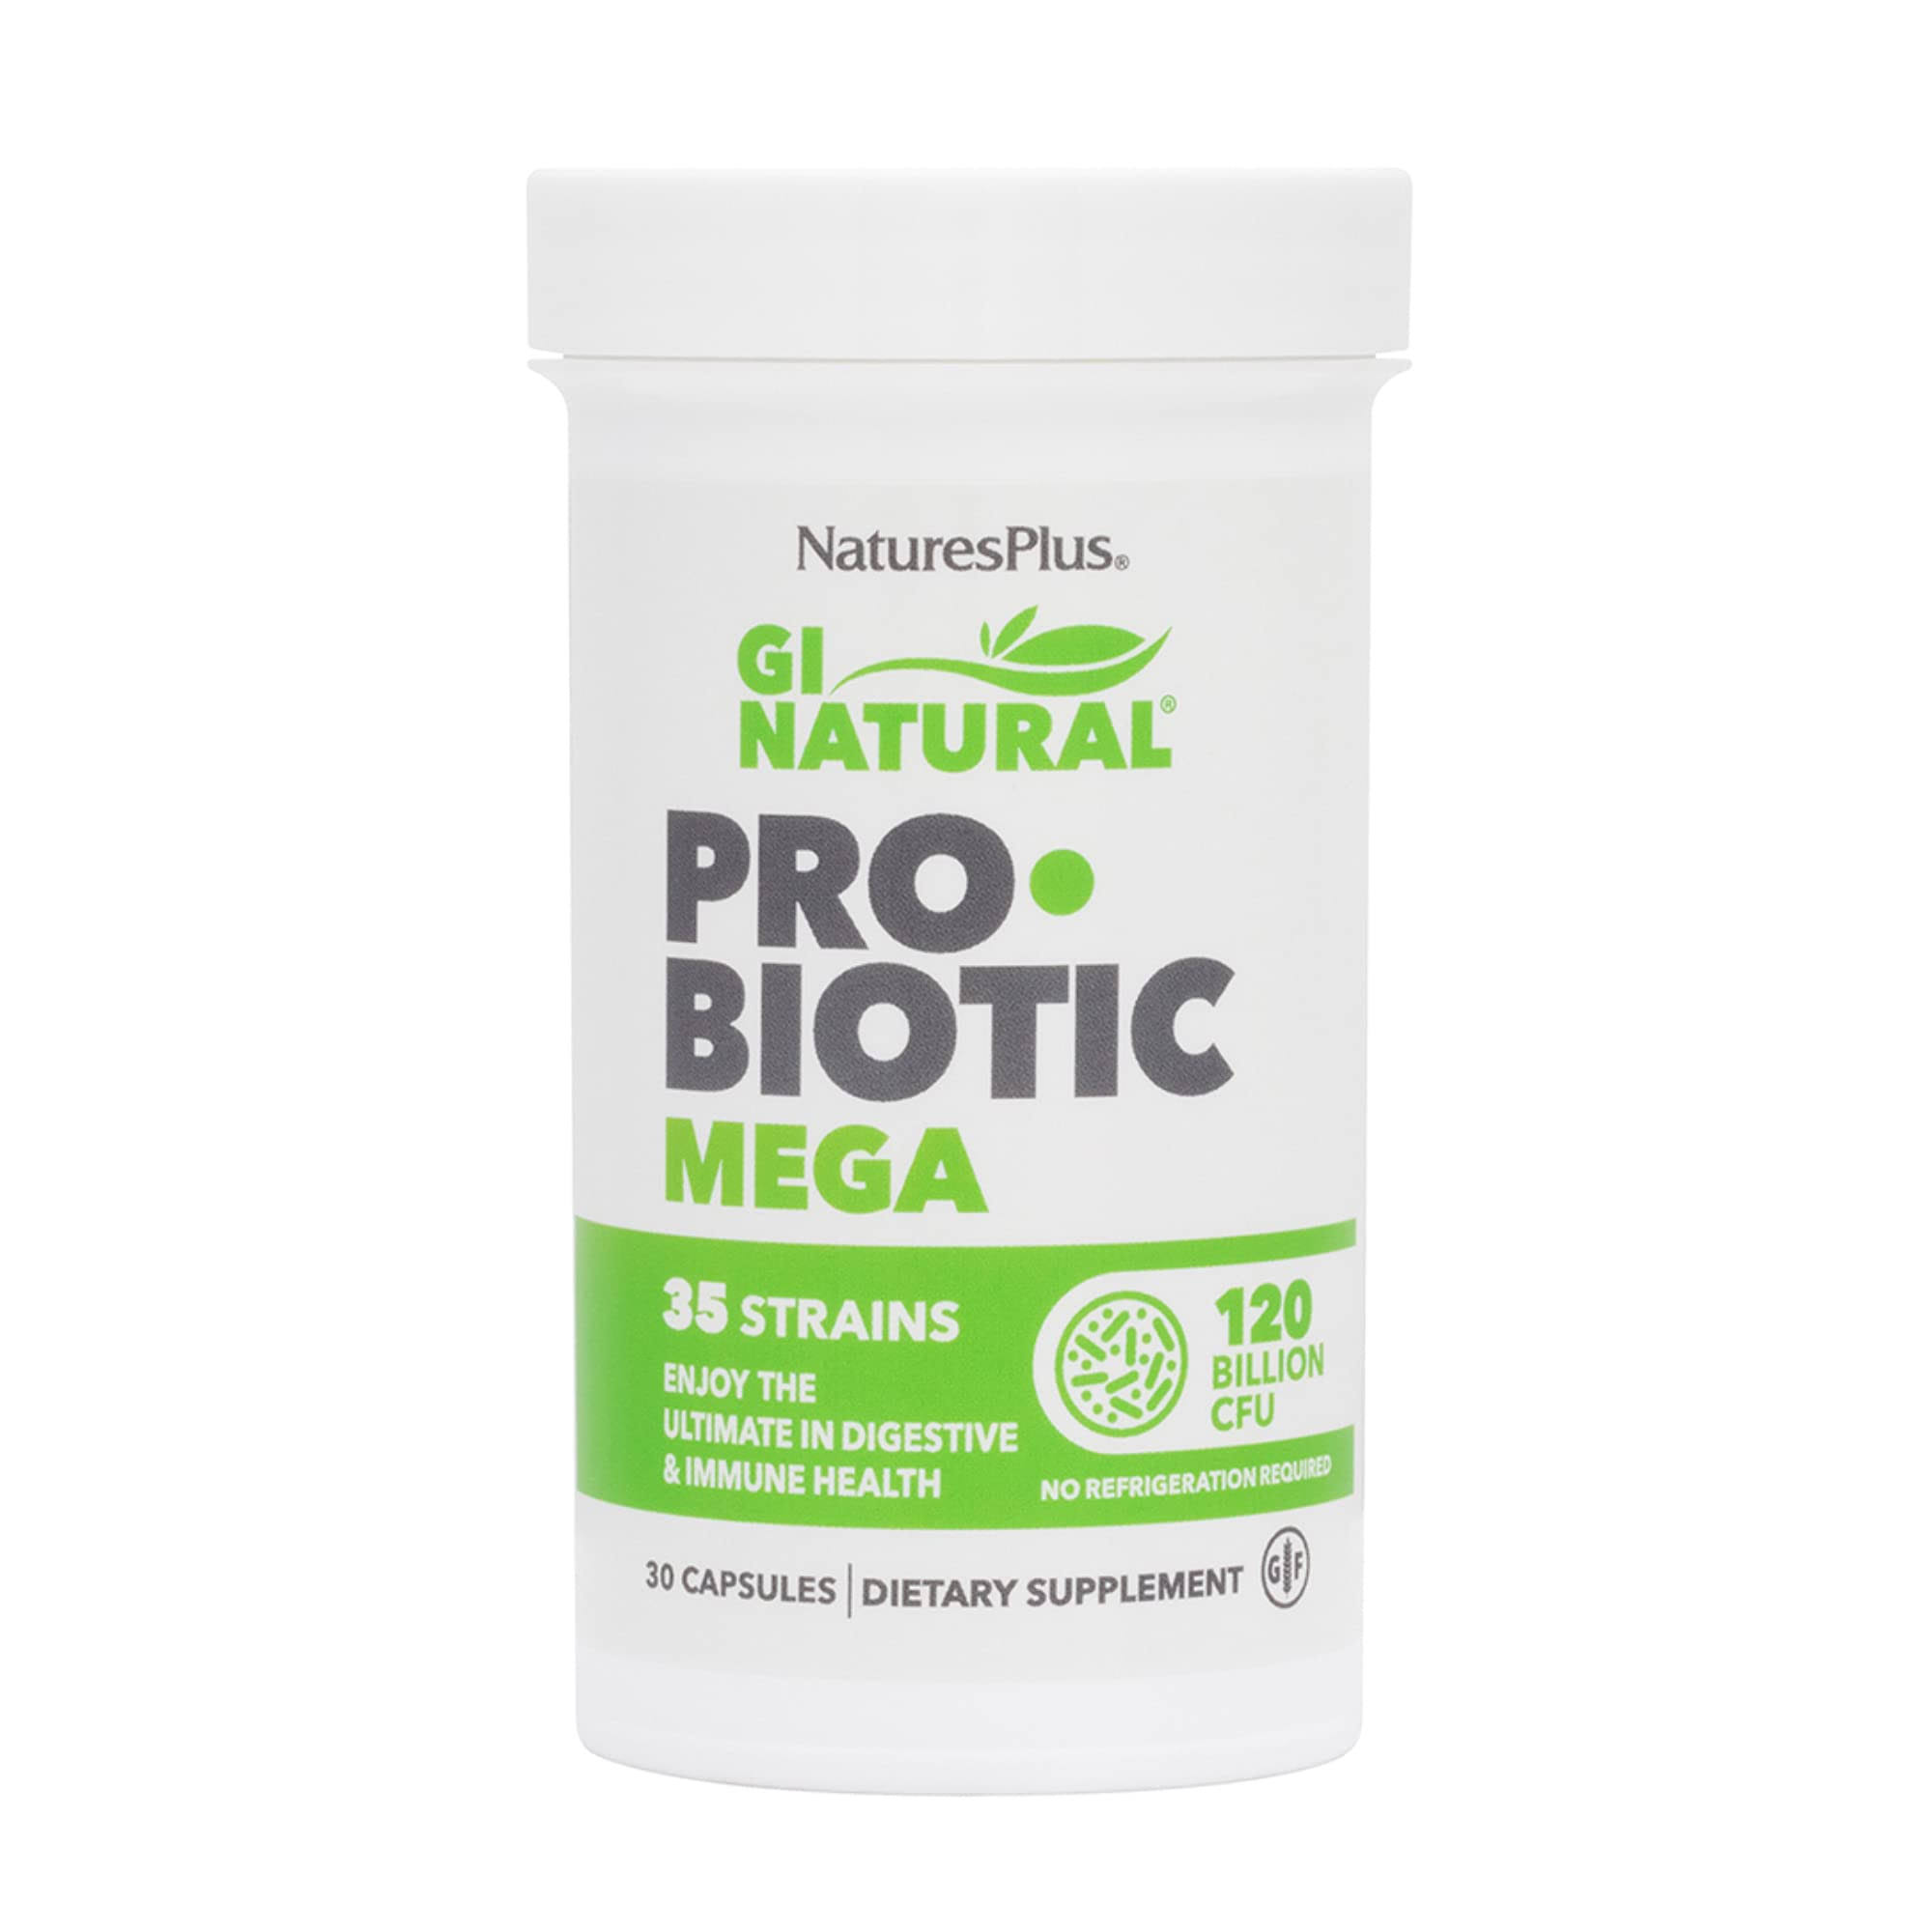 Nature's Plus GI Natural Probiotic Mega 30 capsules